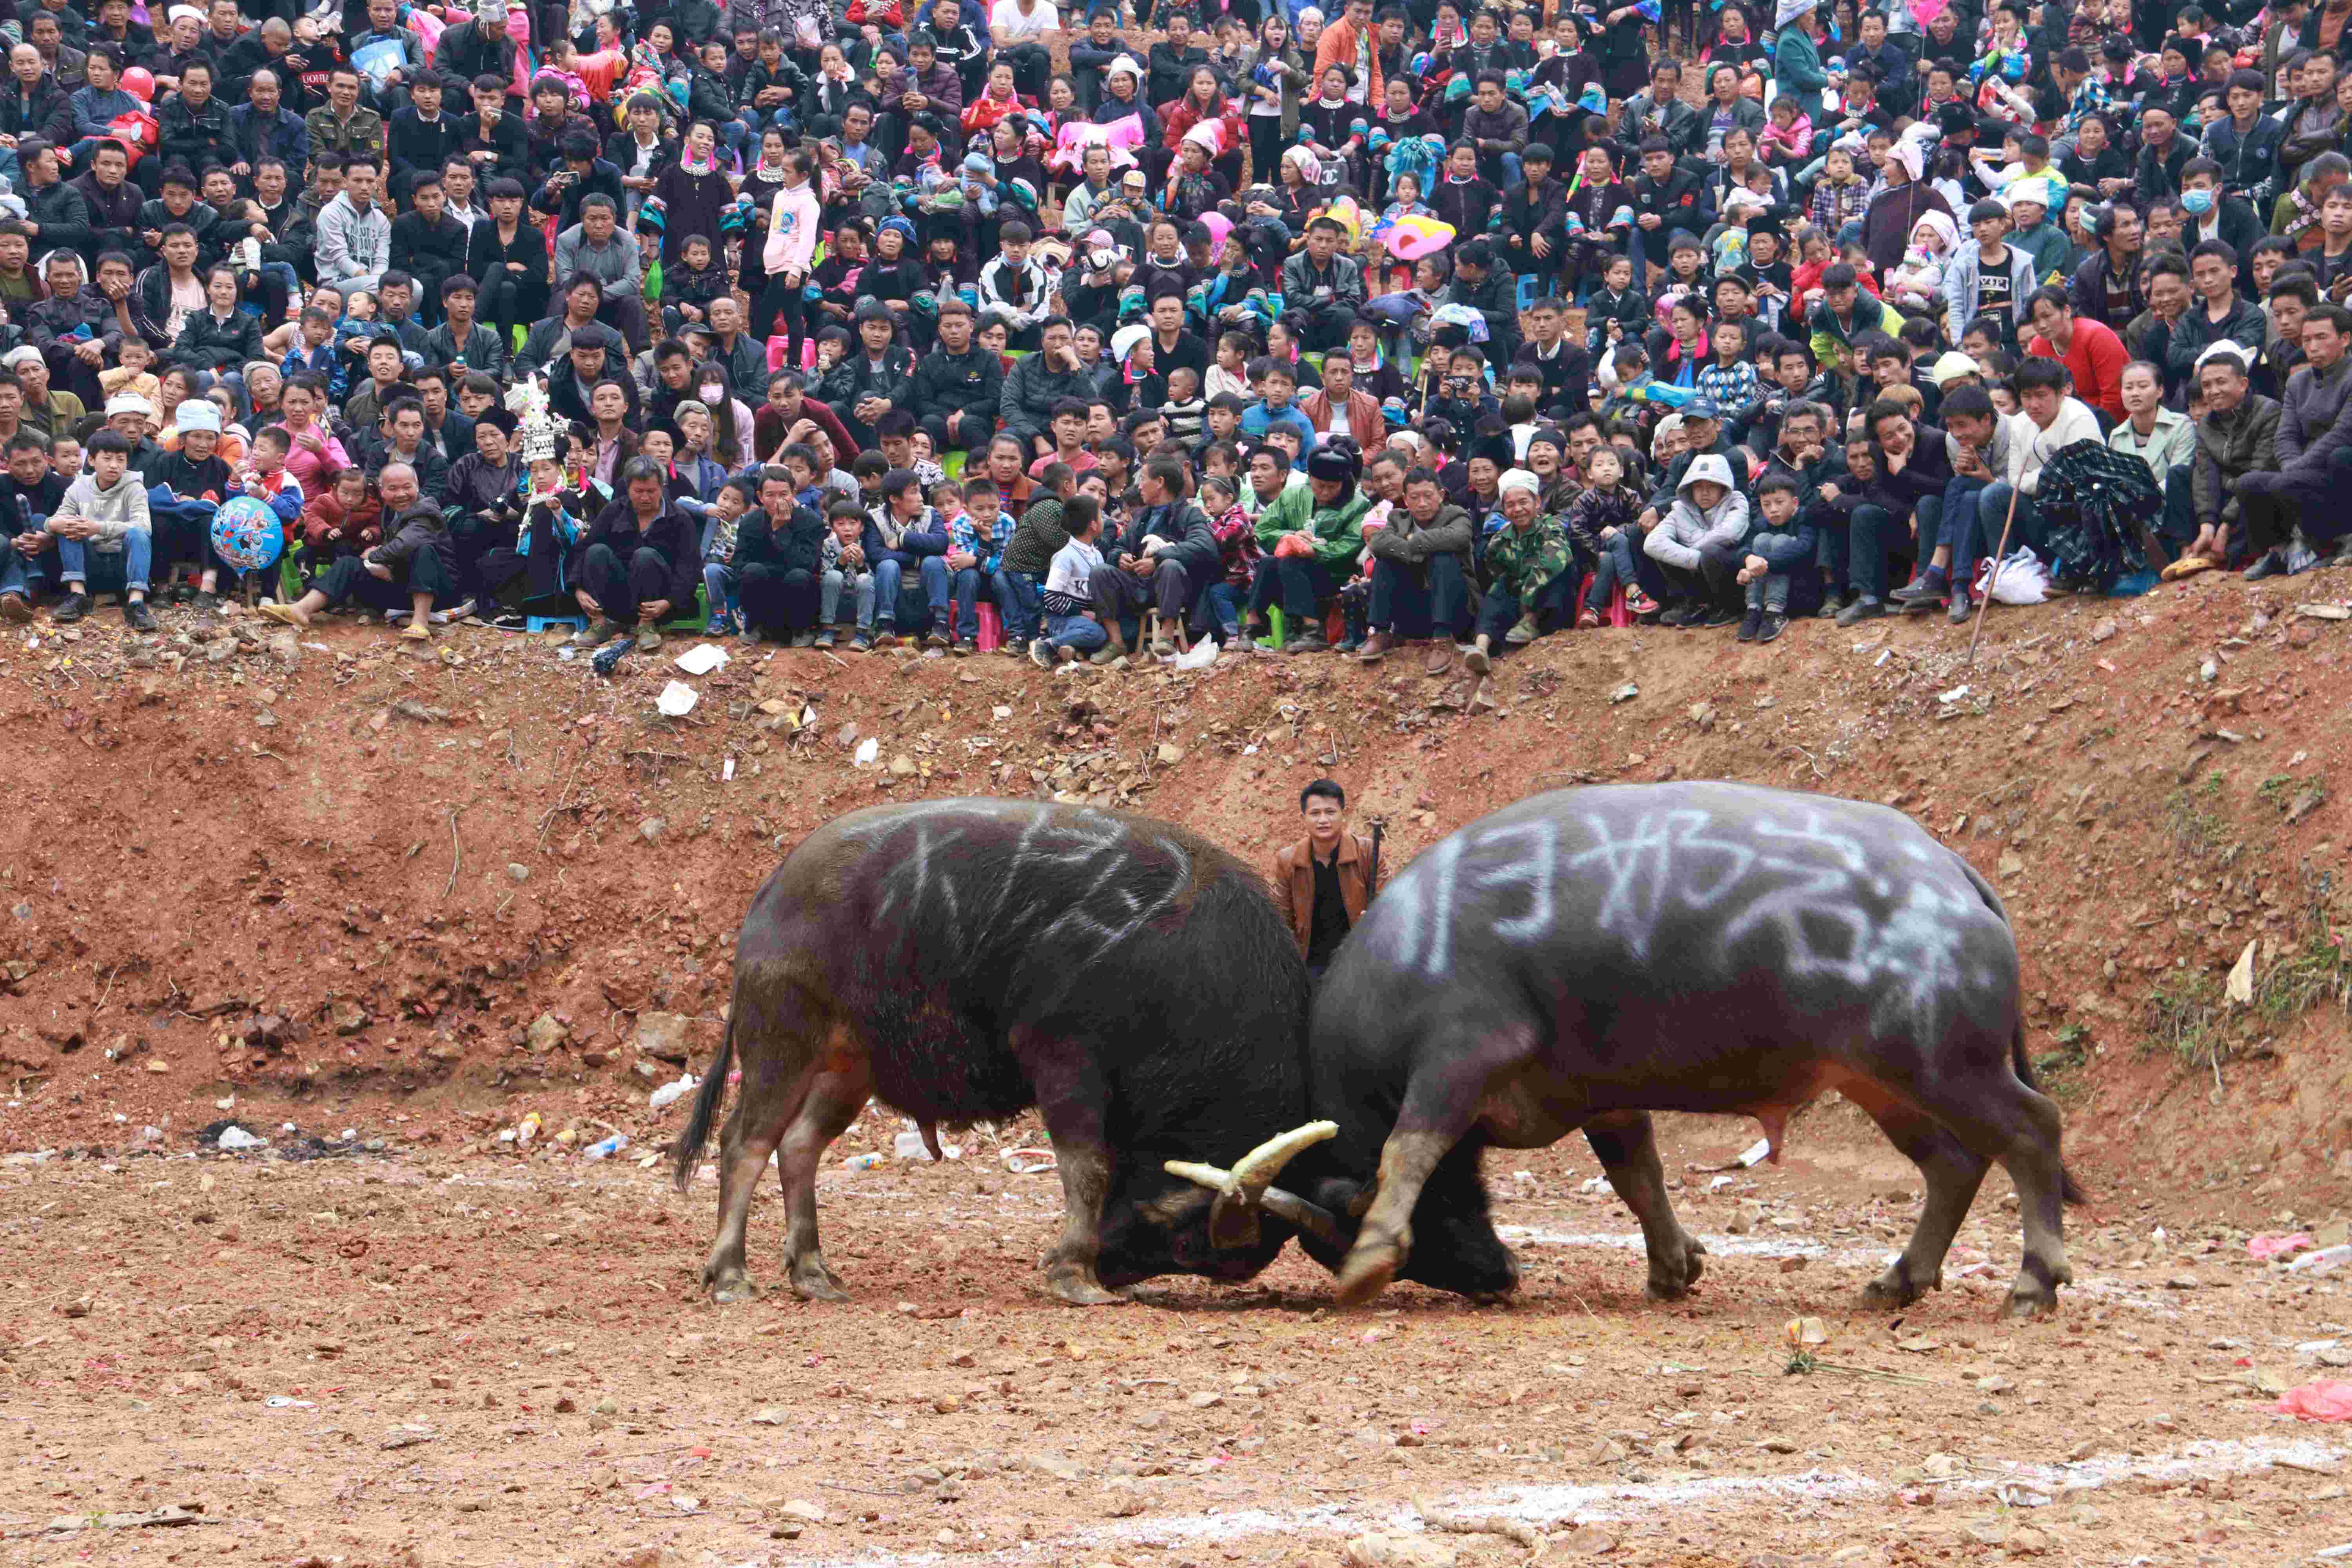 斗牛俗称牛打架,是从江县苗侗民族同胞最喜爱的一项民俗民间竞技